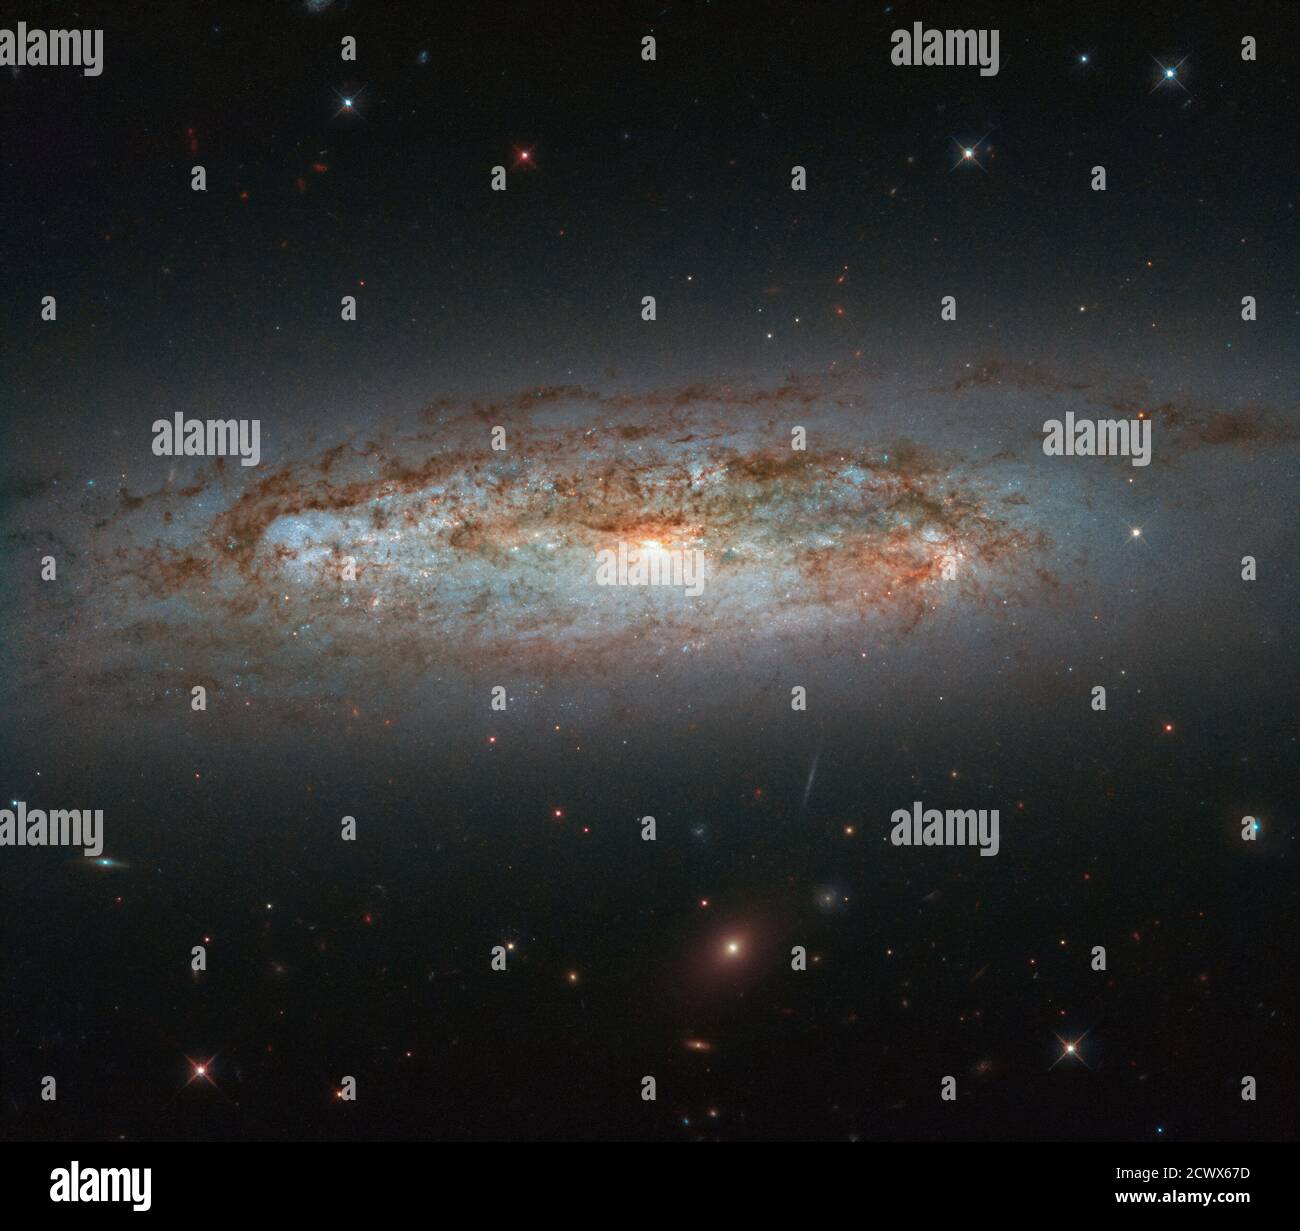 Hubble Views l’éblouissant écran de Galaxy NGC 3175 est situé à environ 50 millions d’années-lumière dans la constellation d’Antlia (la pompe à air). La galaxie se coupe à travers le cadre dans cette image à partir du télescope spatial Hubble NASA/ESA. Son mélange de taches de gaz lumineux, de bandes sombres de poussière, de noyau lumineux, et de tourbillonner, les bras de roue se réunissent pour peindre une belle scène céleste. Banque D'Images